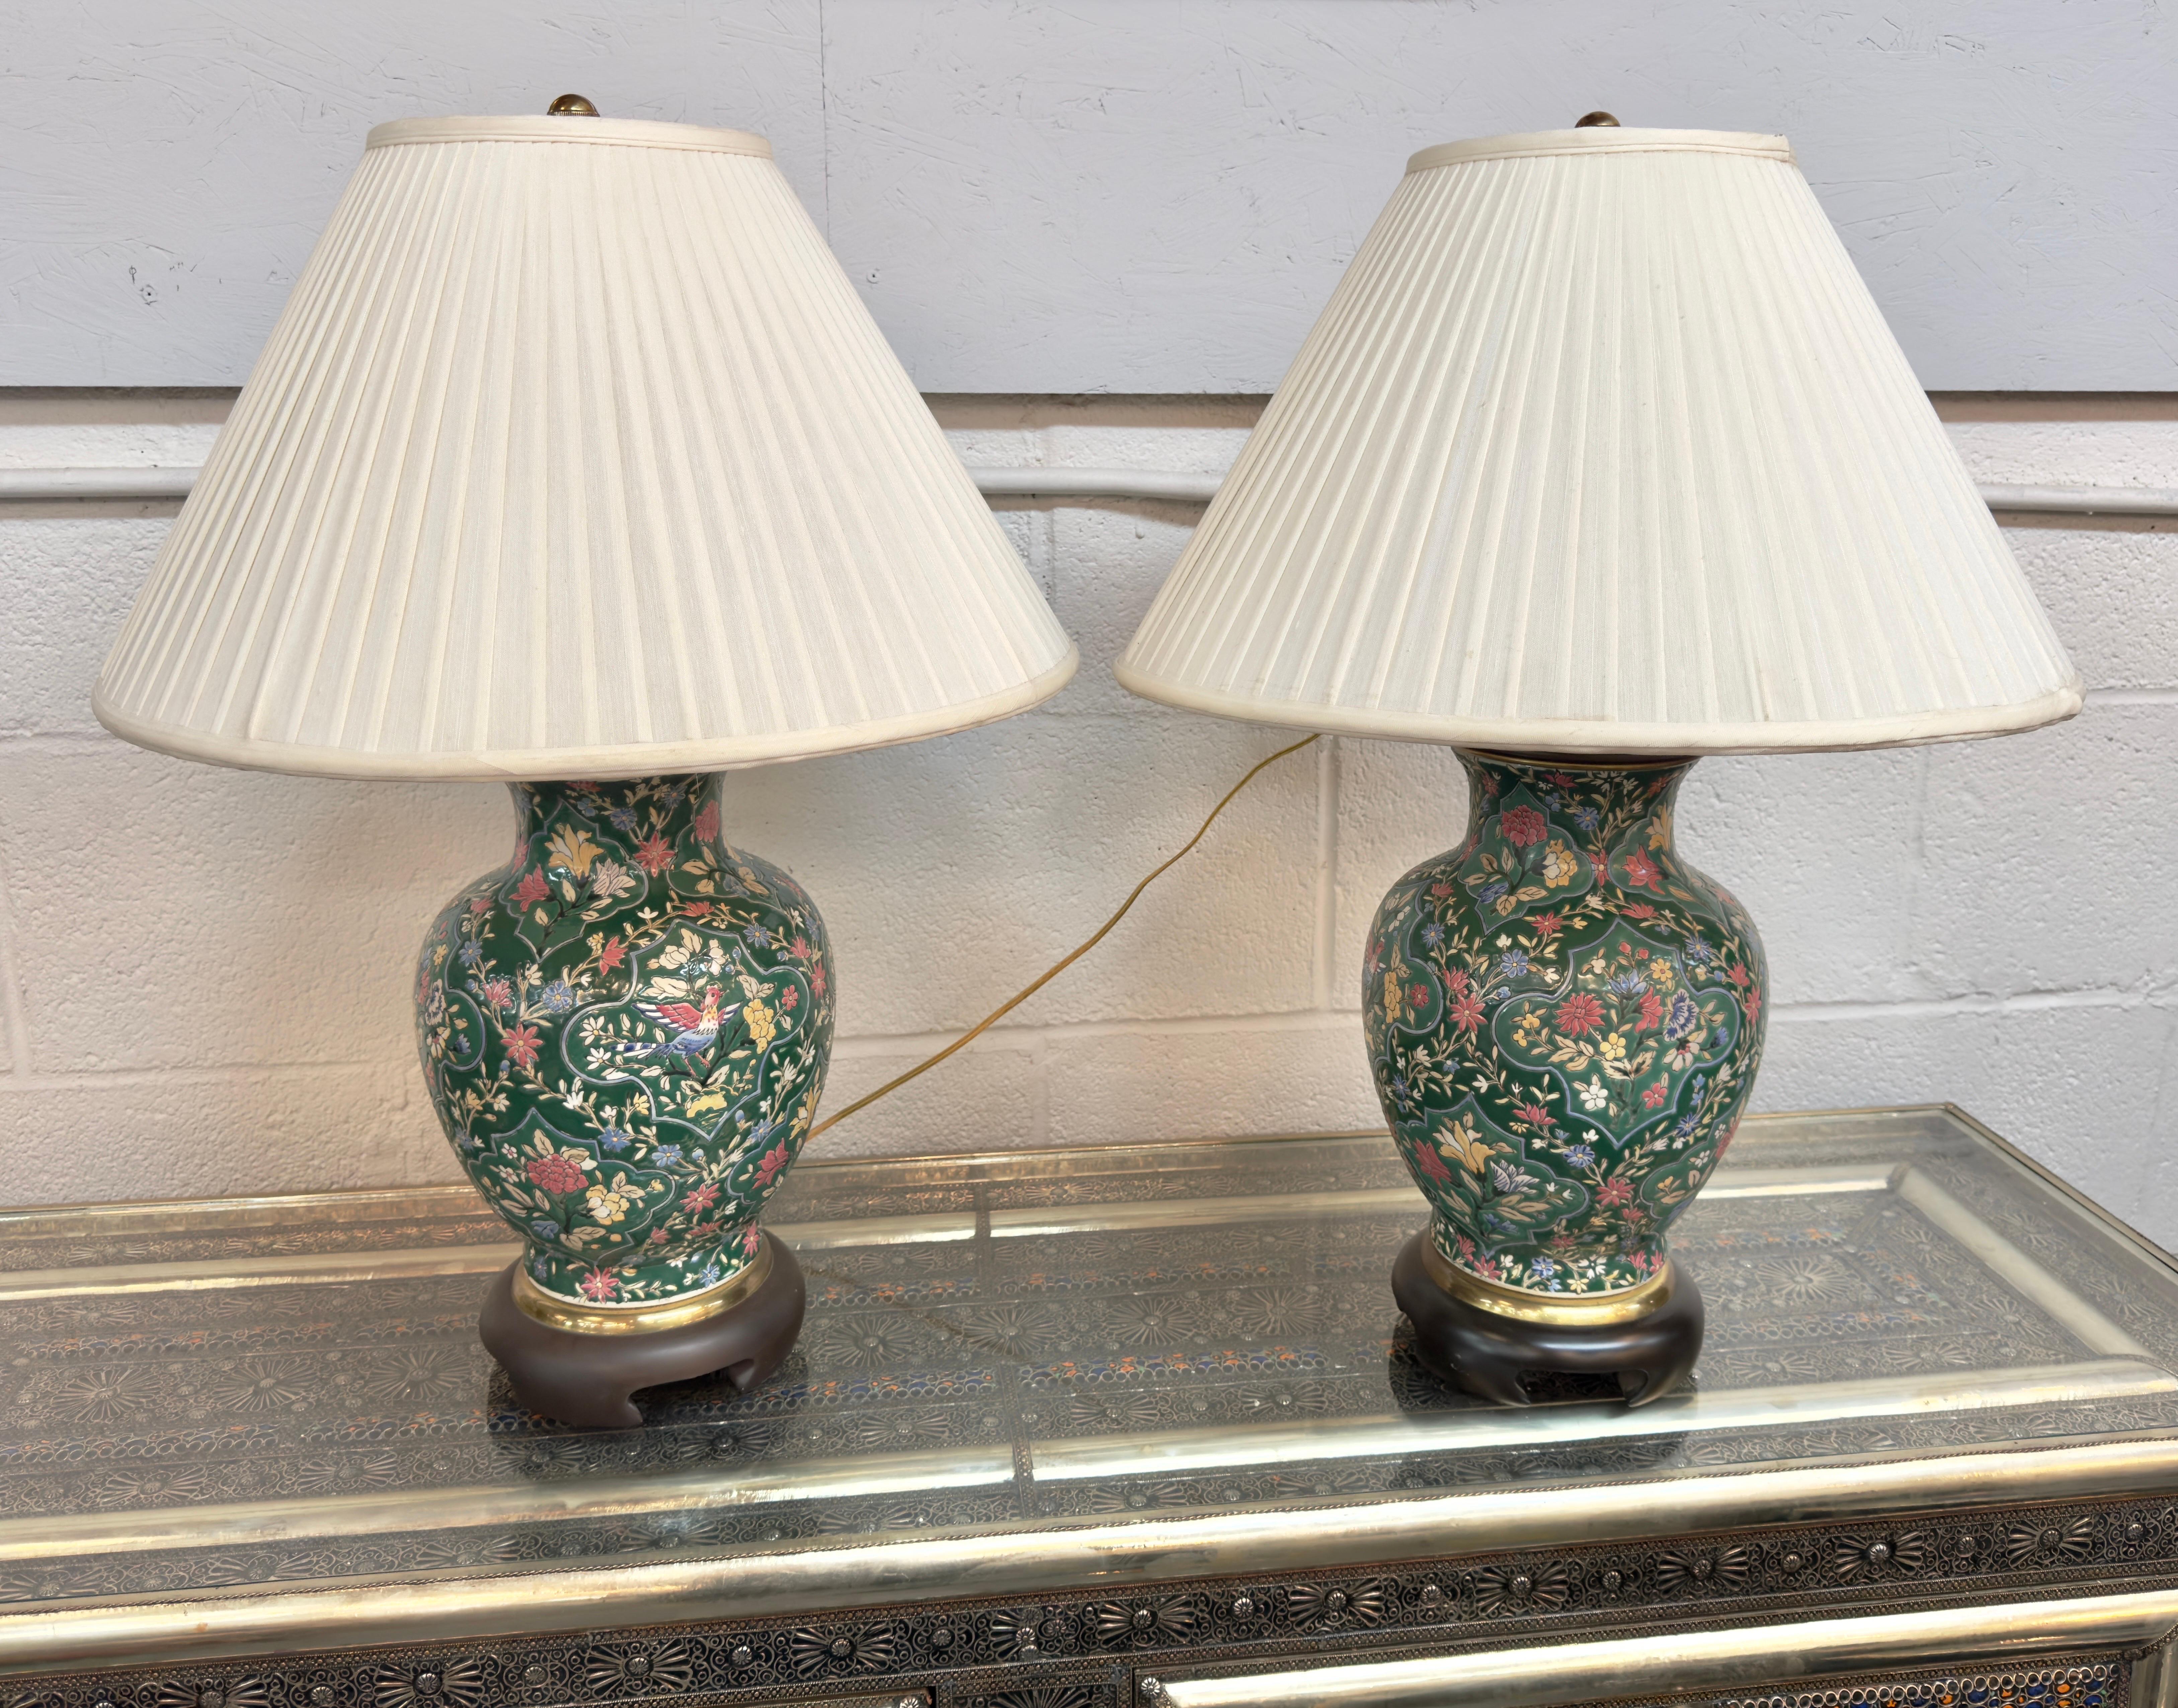 Ein Paar Frederick Cooper Tischlampen im Chinoiserie-Stil. Jede Lampe ist mit einem bezaubernden Blumenmotiv und einem Vogelmotiv in der Mitte geschmückt und wird in feiner Handarbeit auf feines Porzellan gemalt. Die üppigen Grüntöne, ergänzt durch